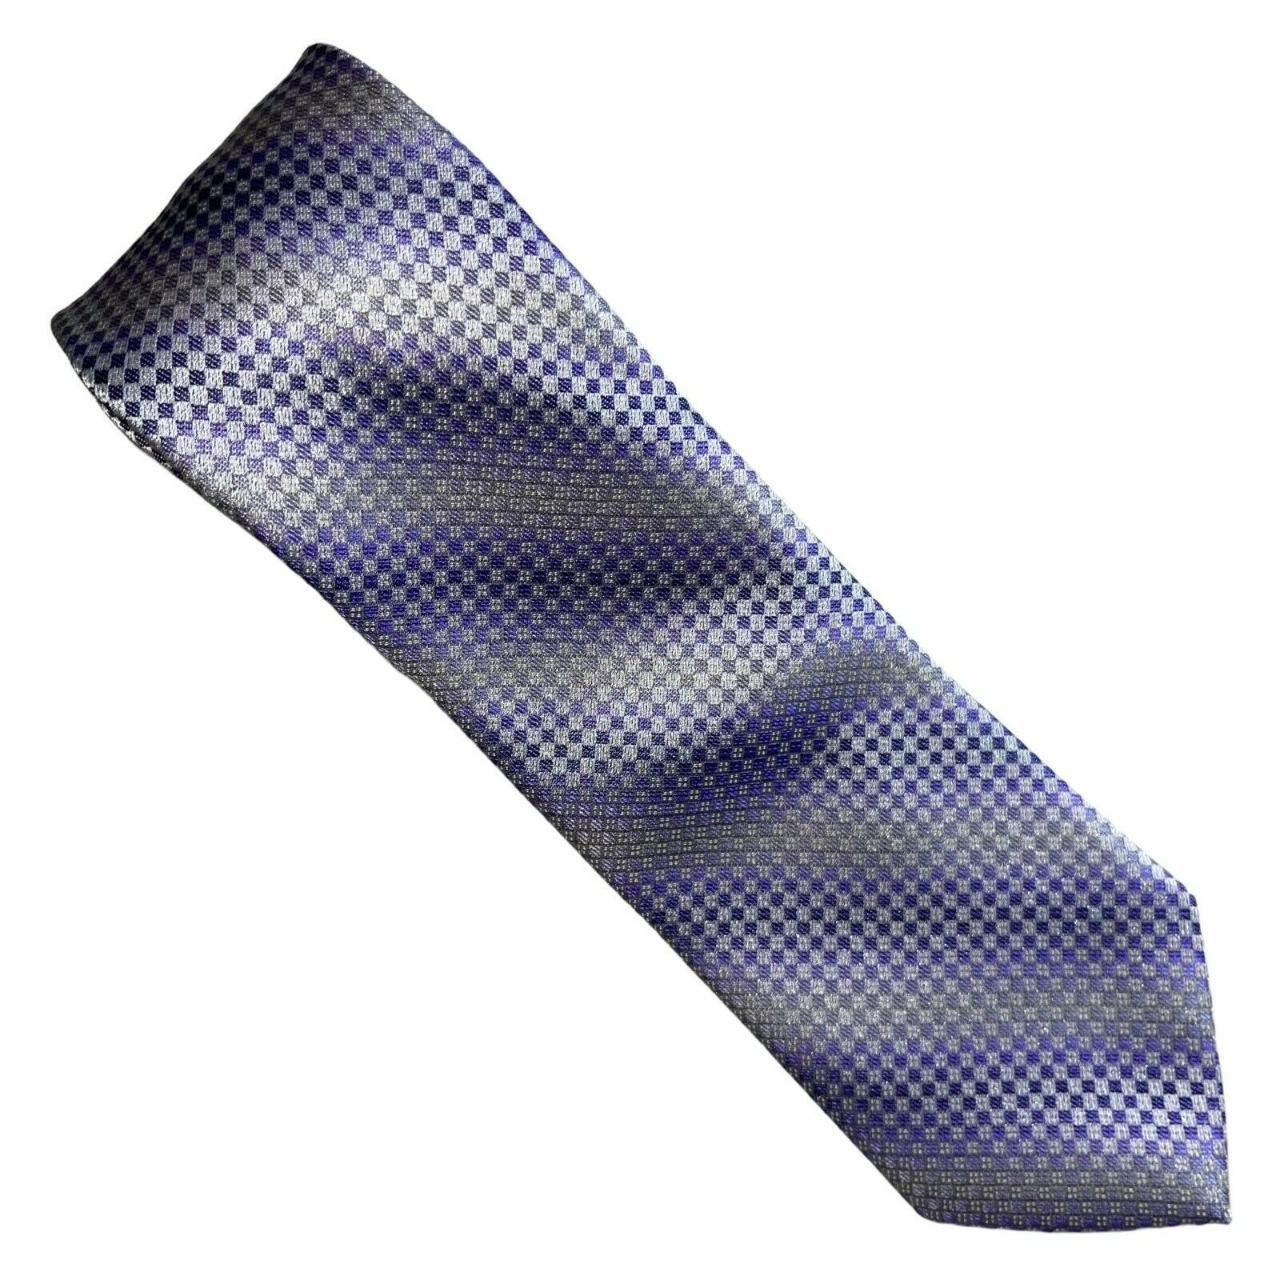 Product Image 1 - Brand: Van Heusen
Type: Tie
Style: Necktie
Color: